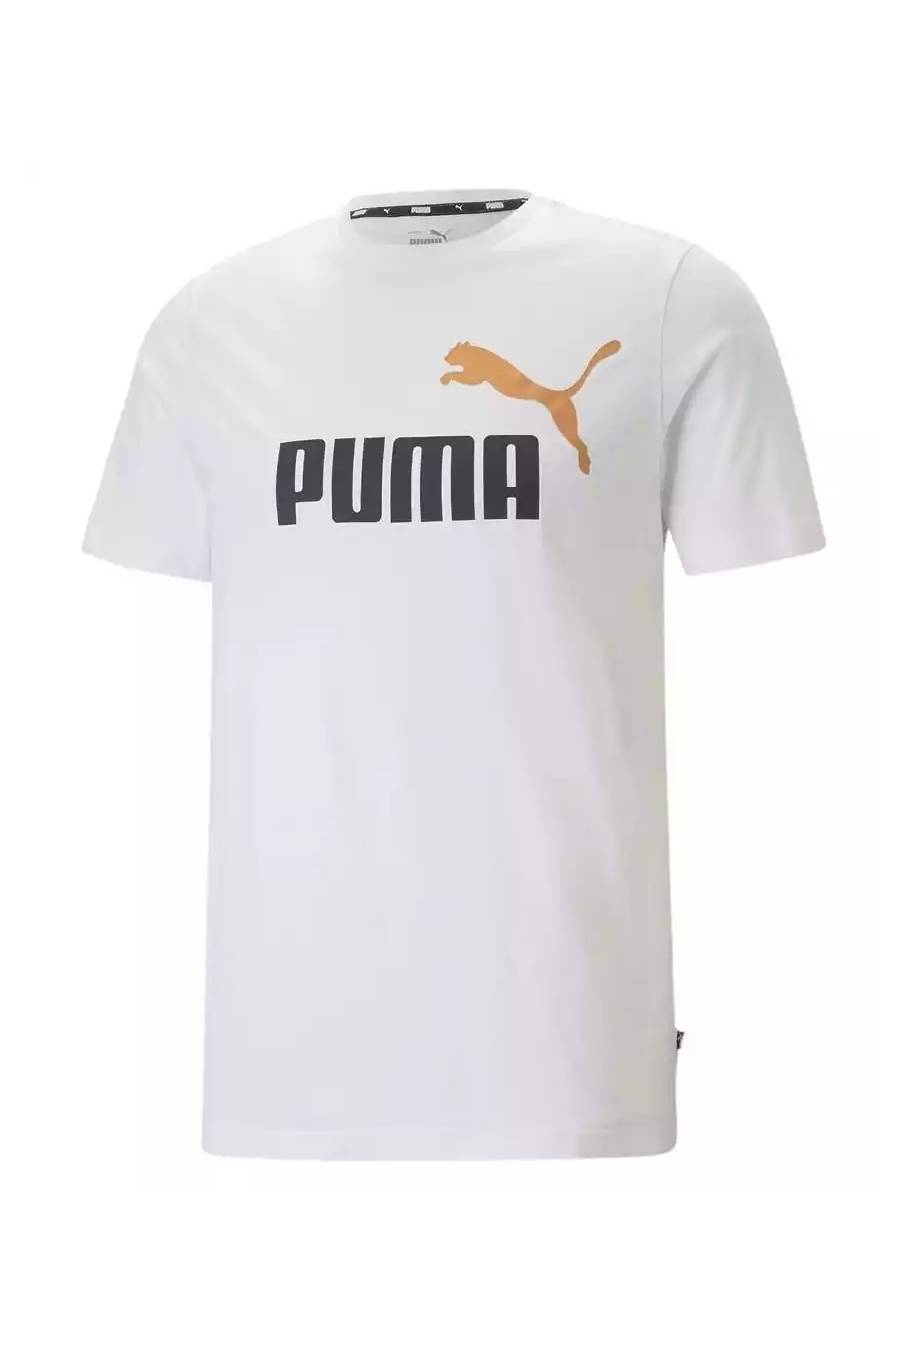 Camiseta Puma Essentials 2 - 586759-58